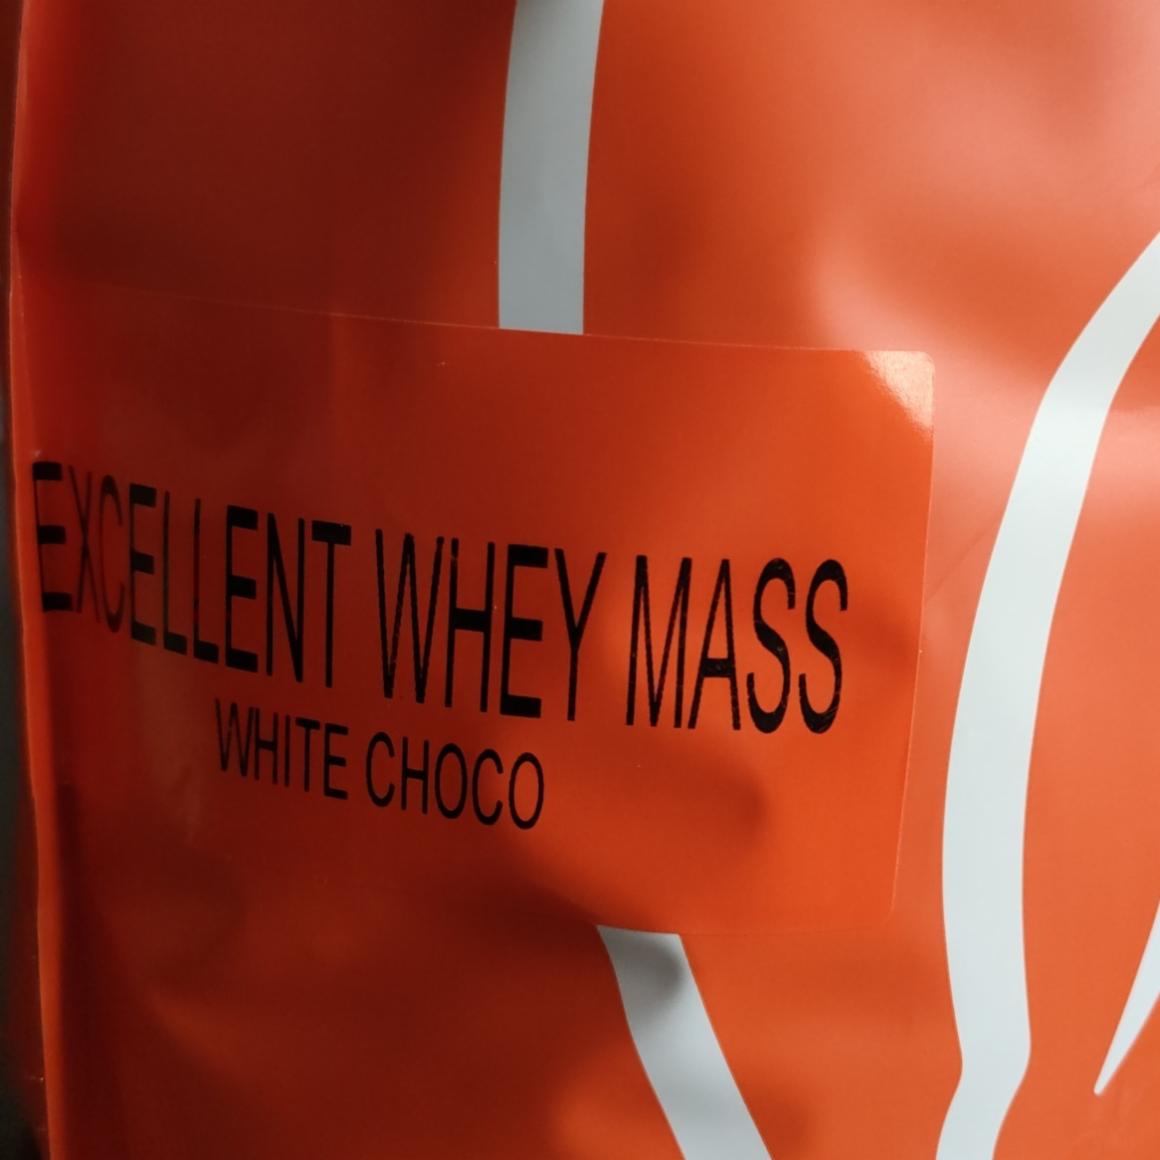 Fotografie - Excellent Whey Mass White Choco Still Mass